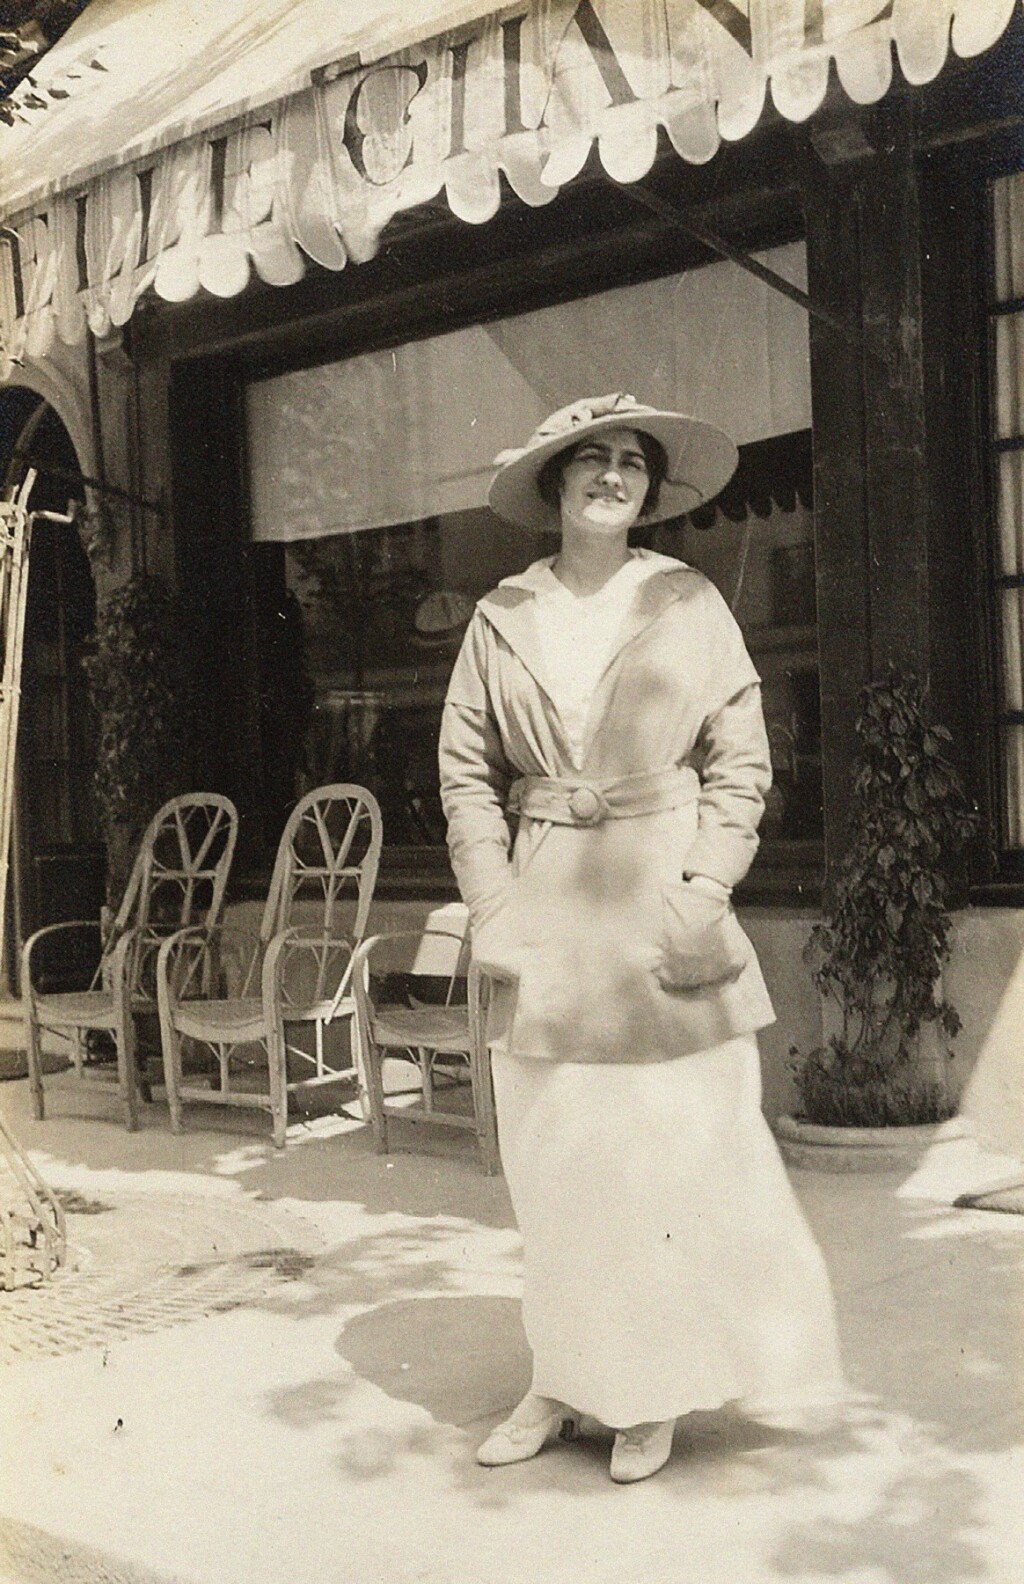 Gabrielle Coco Chanel ispred svog butika u Deauvilleu